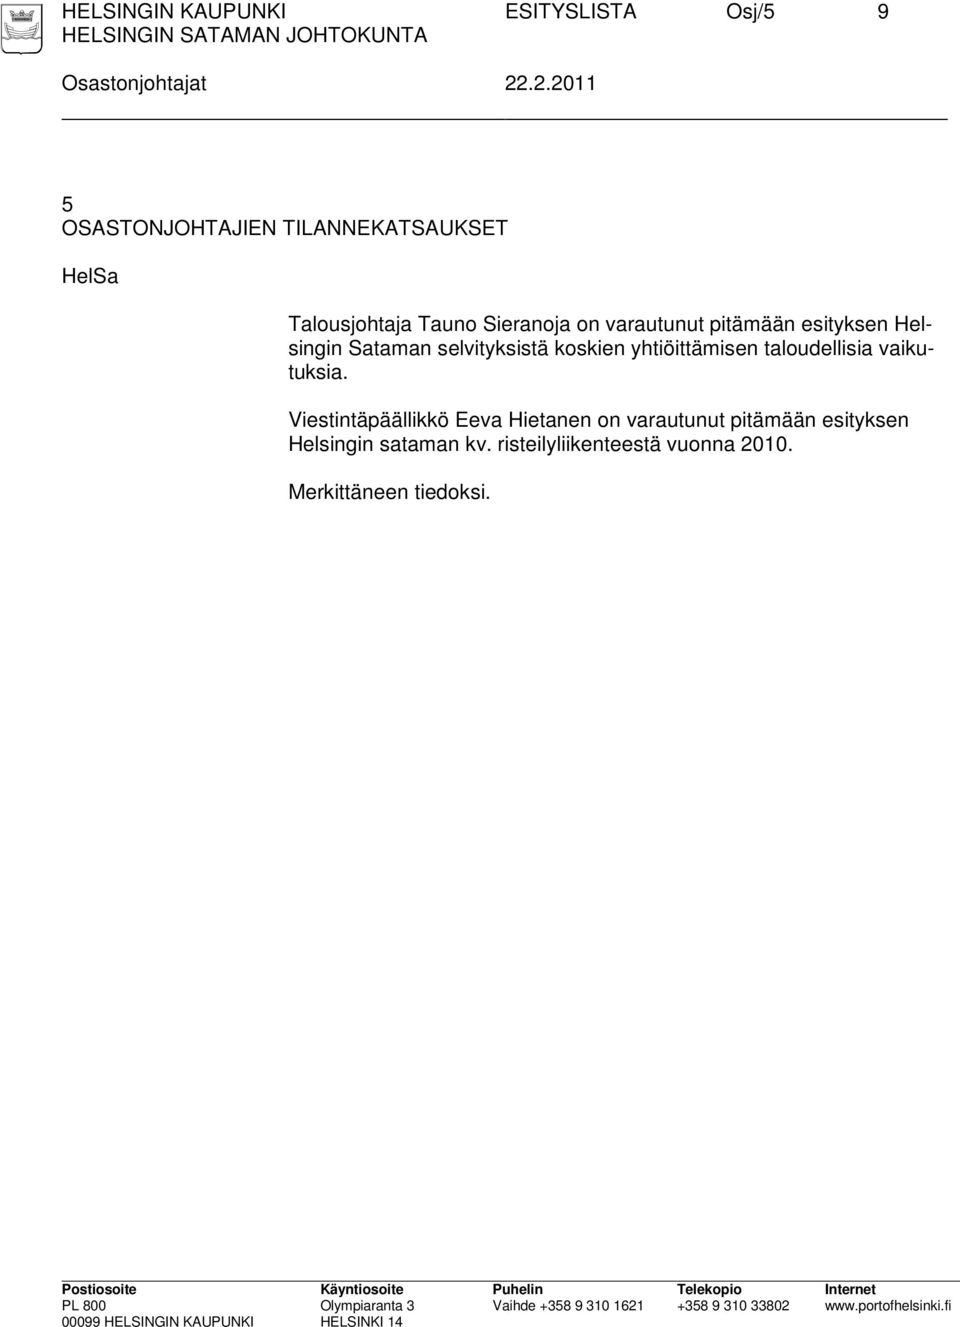 pitämään esityksen Helsingin Sataman selvityksistä koskien yhtiöittämisen taloudellisia vaikutuksia.